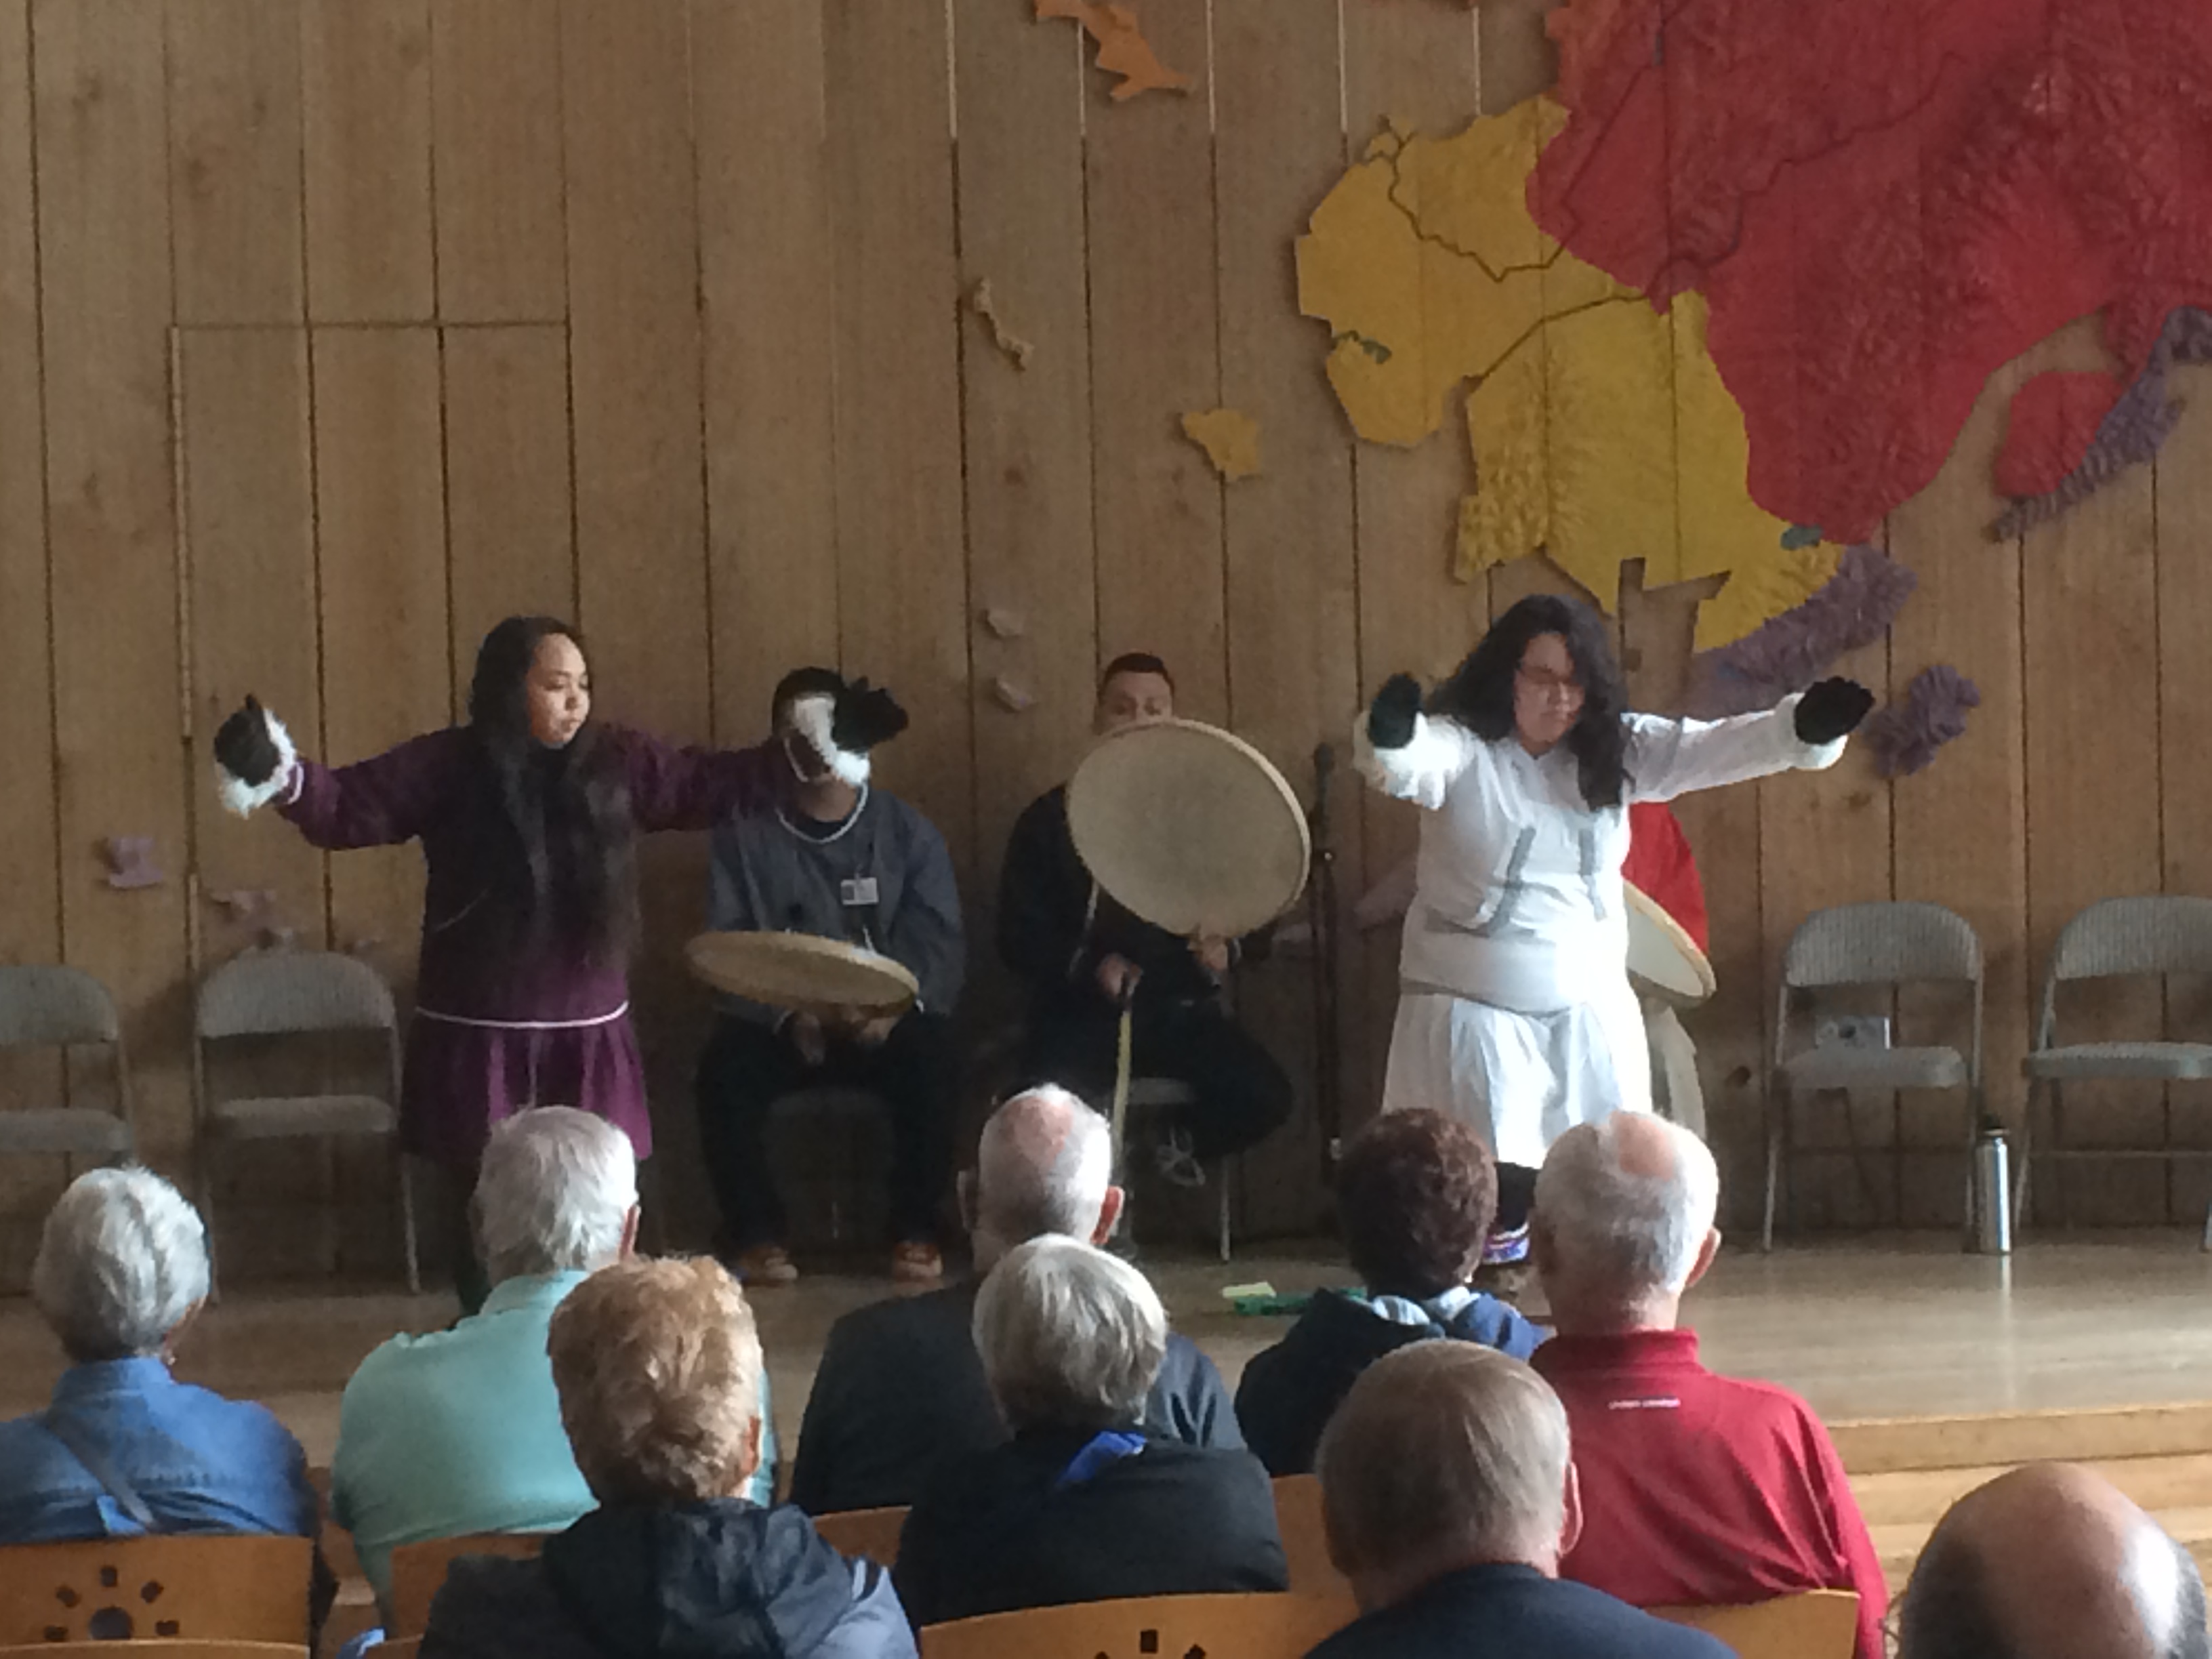 Dancers at the Alaska Native Heritage Center